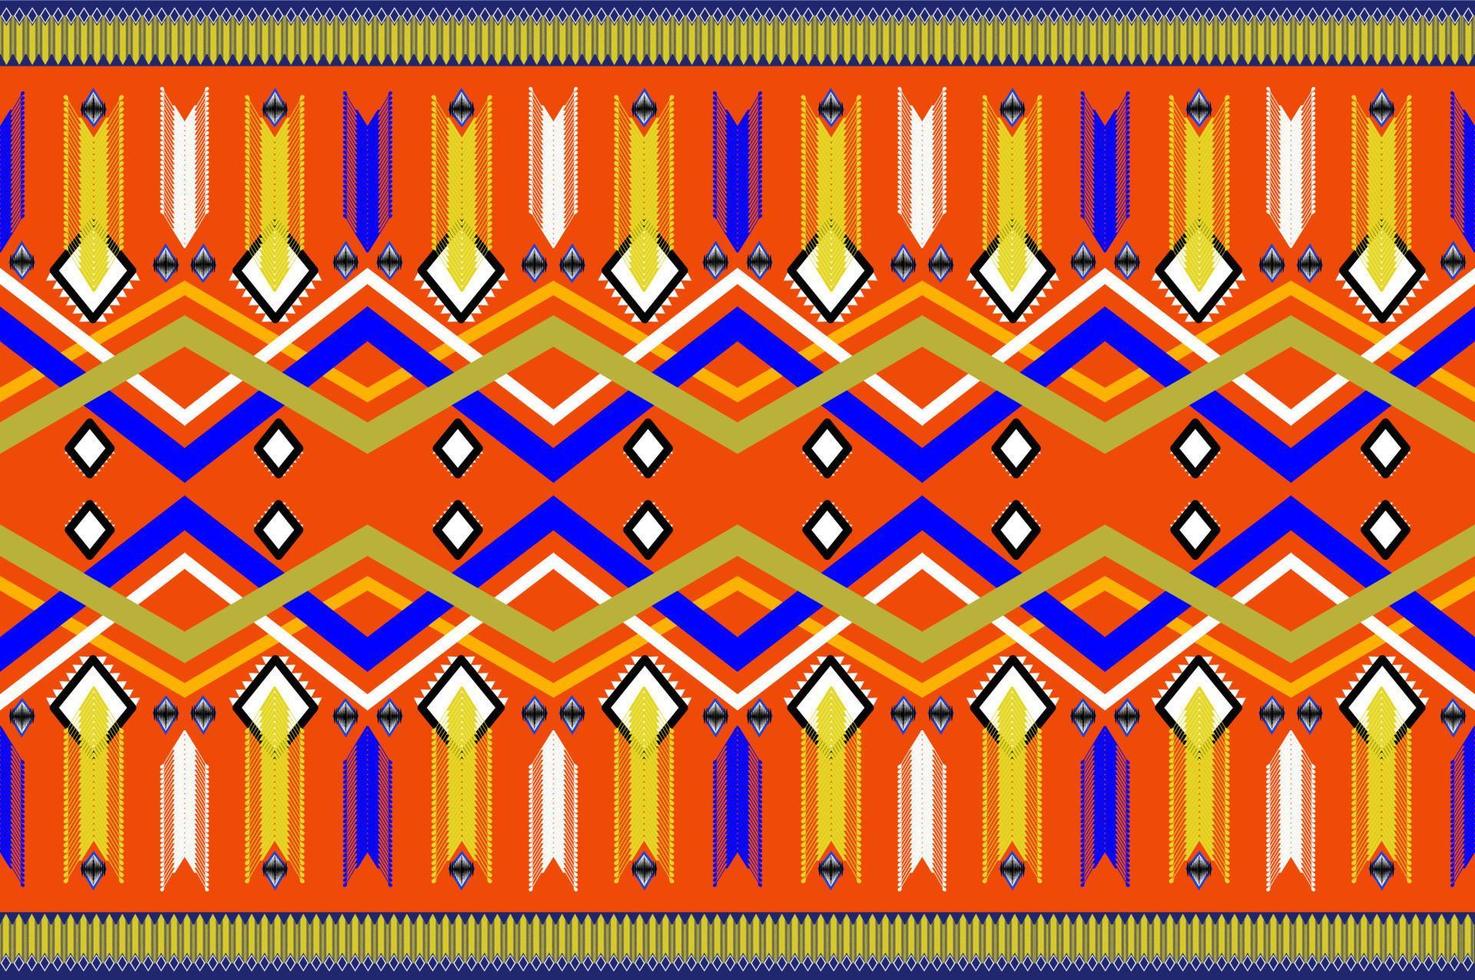 traditionell etnisk geometrisk tyg sömlös mönster vektor